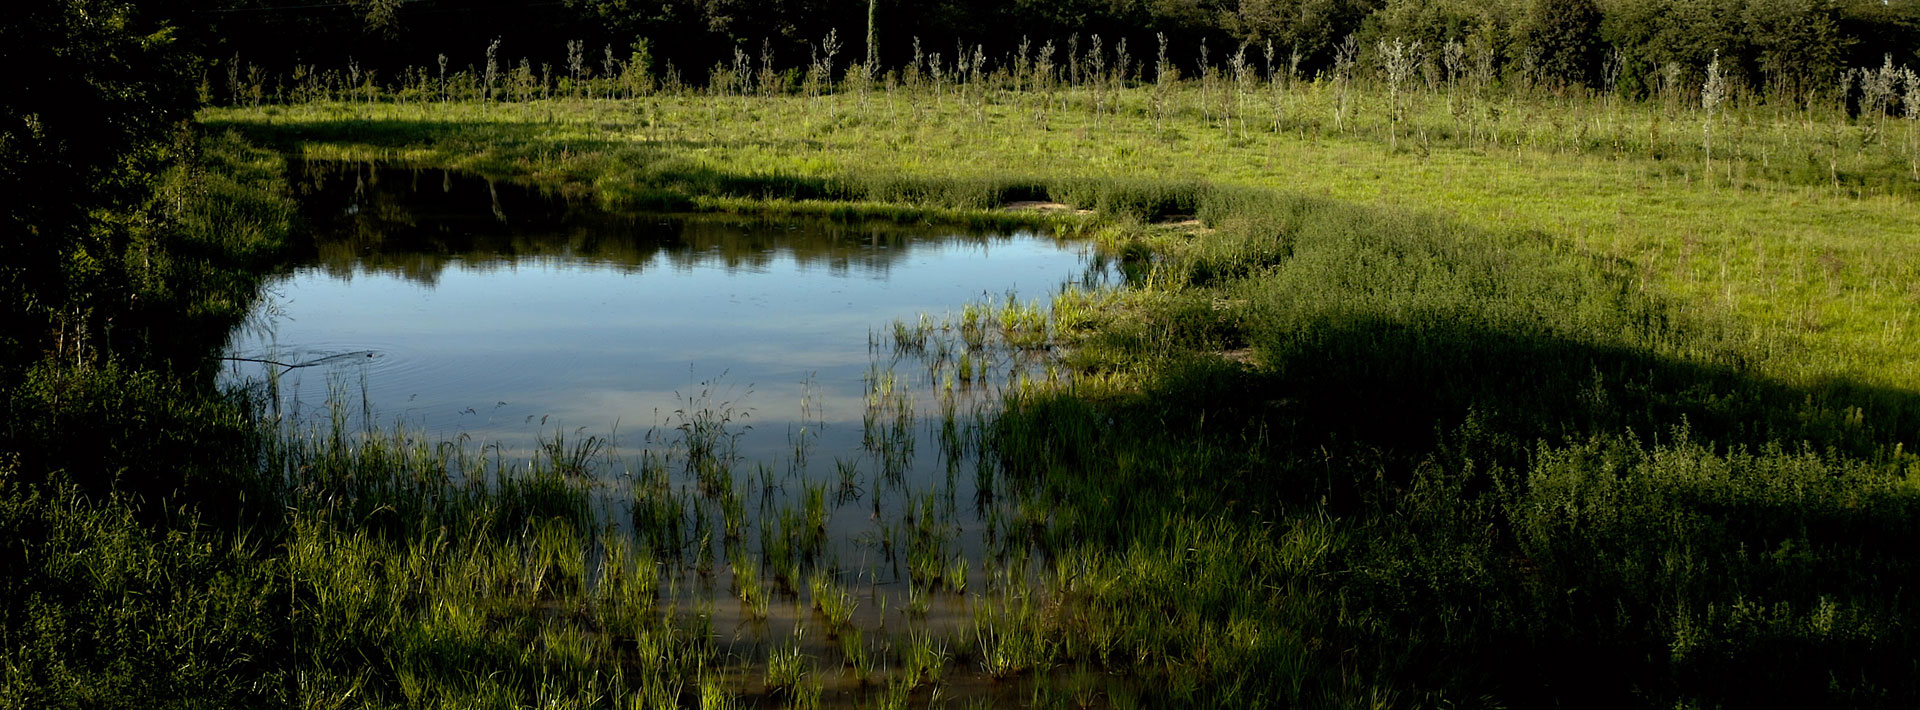 Terreno bonificato a Busto Garolfo, zona umida con laghetto artificiale